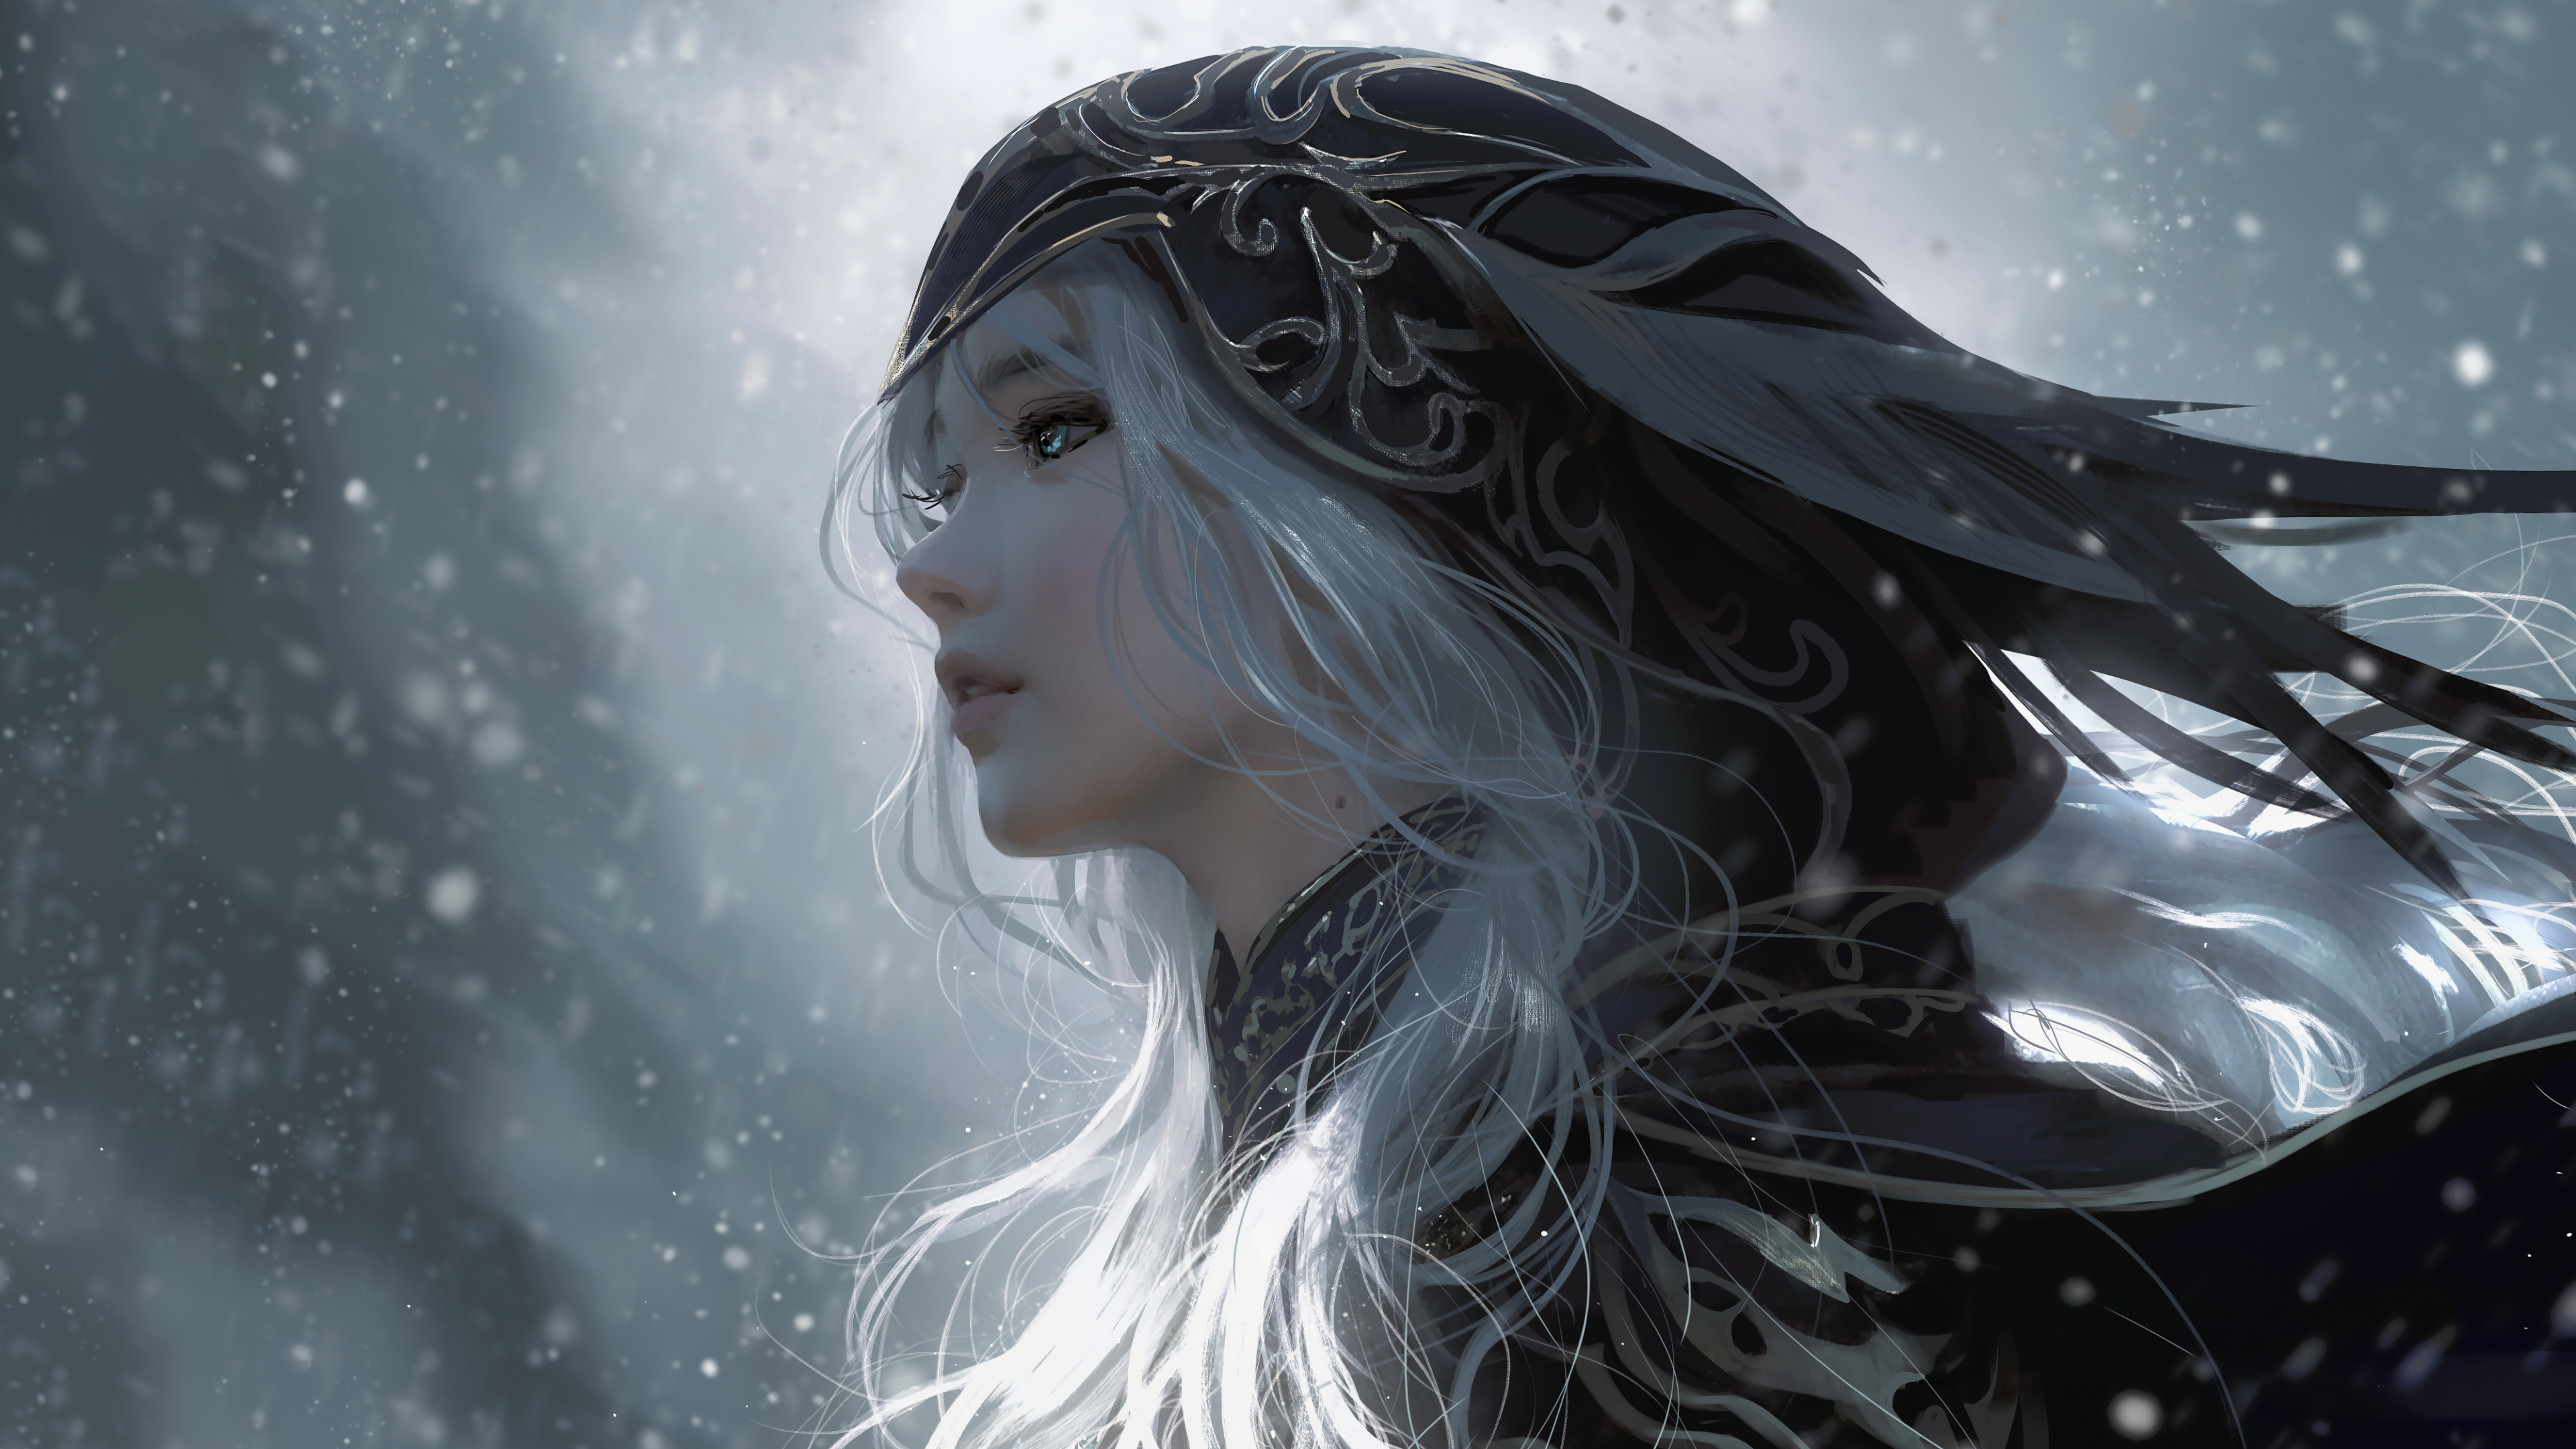 Digital Art Artwork Illustration 4K Women White Hair Long Hair Hoods Fantasy Art Fantasy Girl Side V 3840x2160